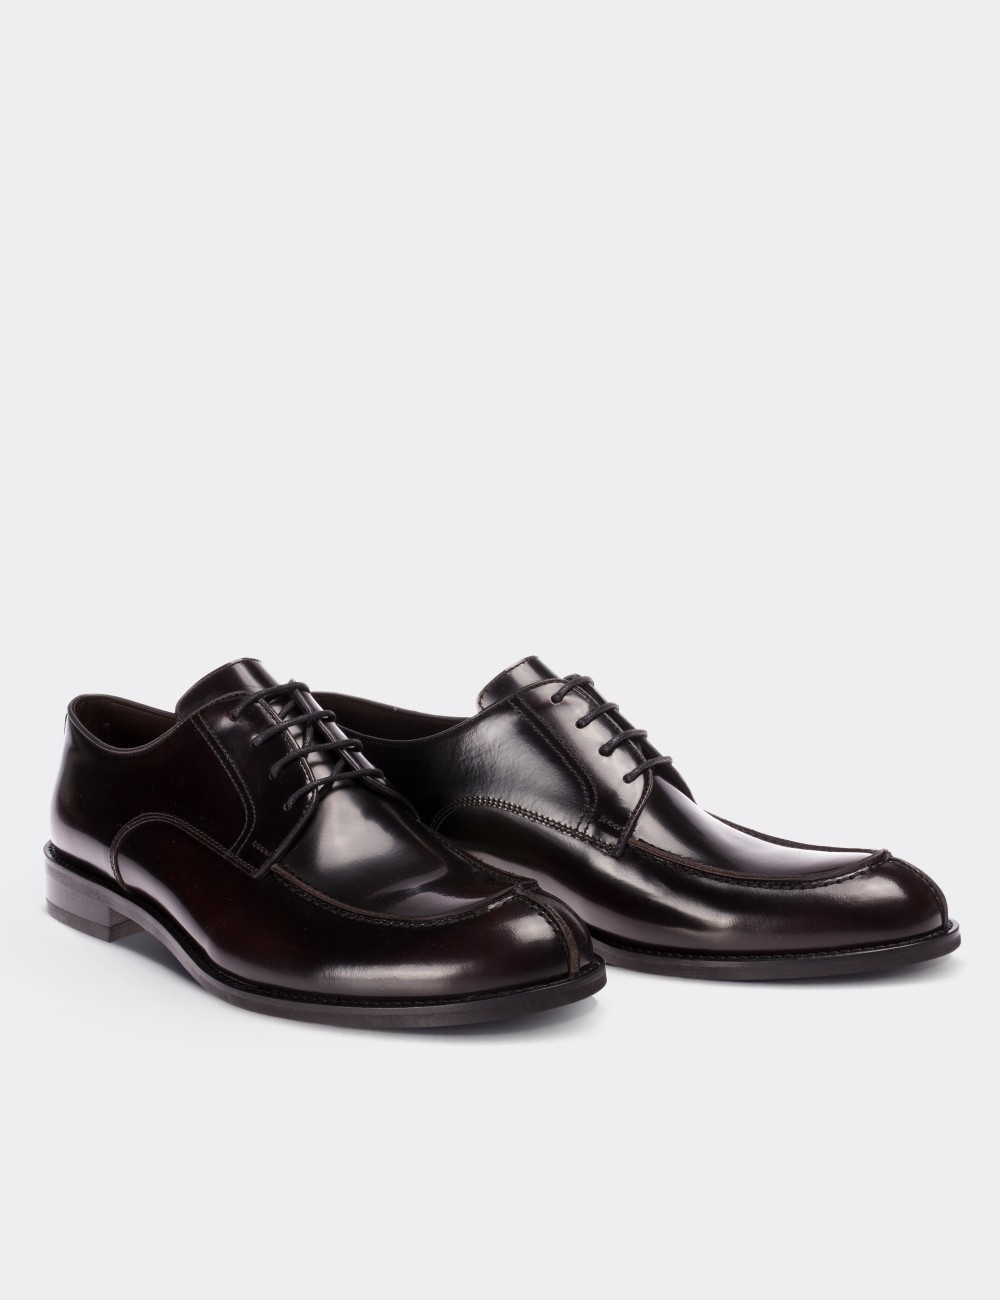 Hakiki Deri Bordo Klasik Erkek Ayakkabı - 01695MBRDM01